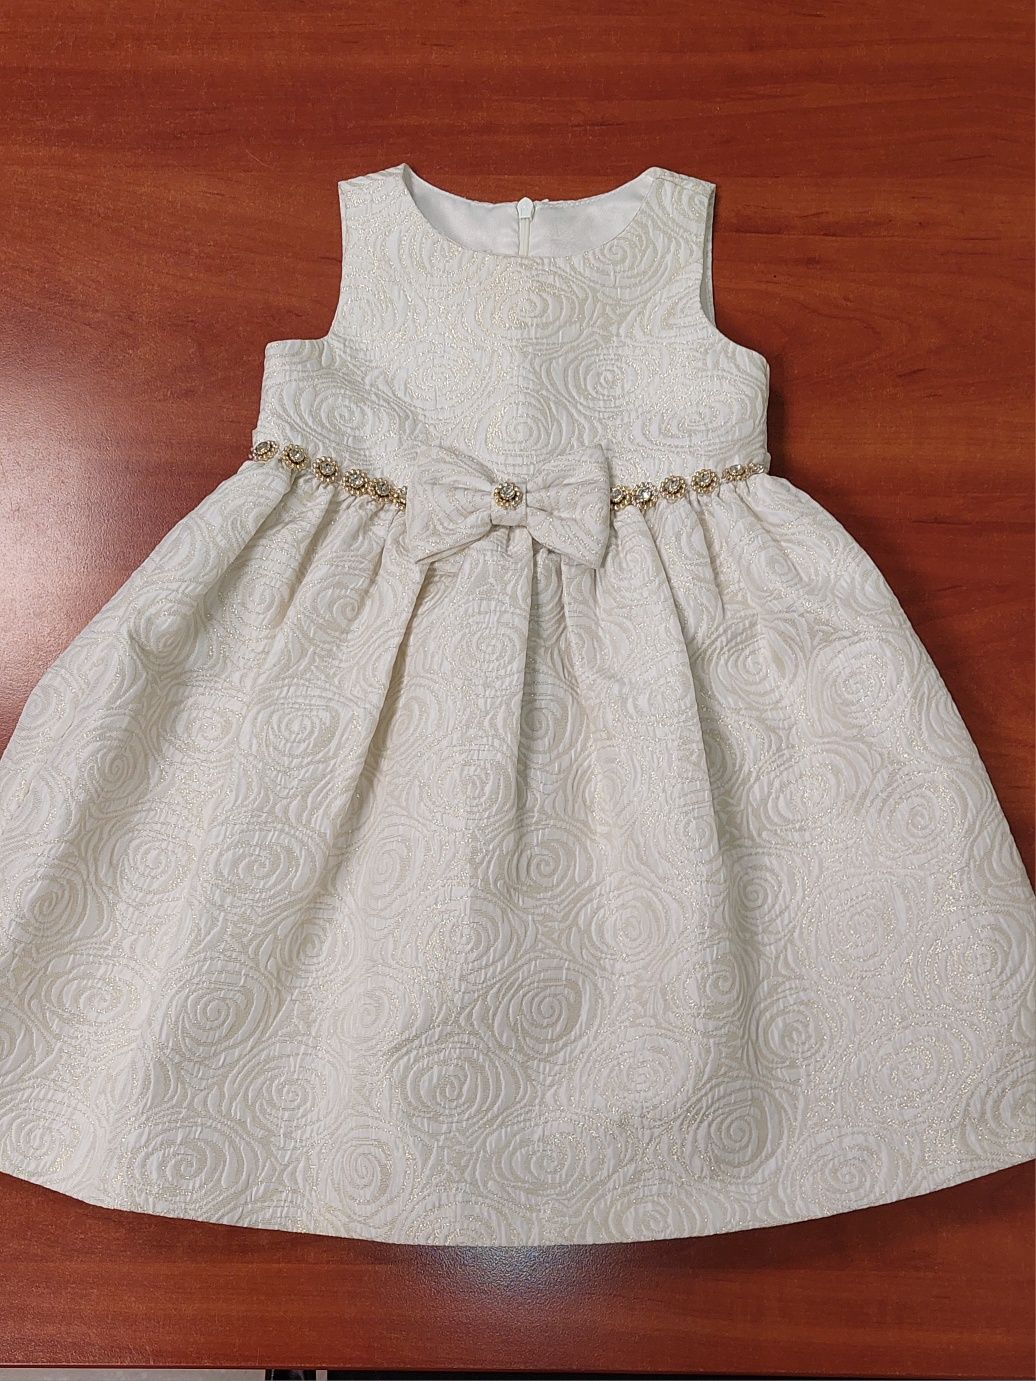 Детское нарядное платье, состояние нового, размер 2Т (на 2 года)